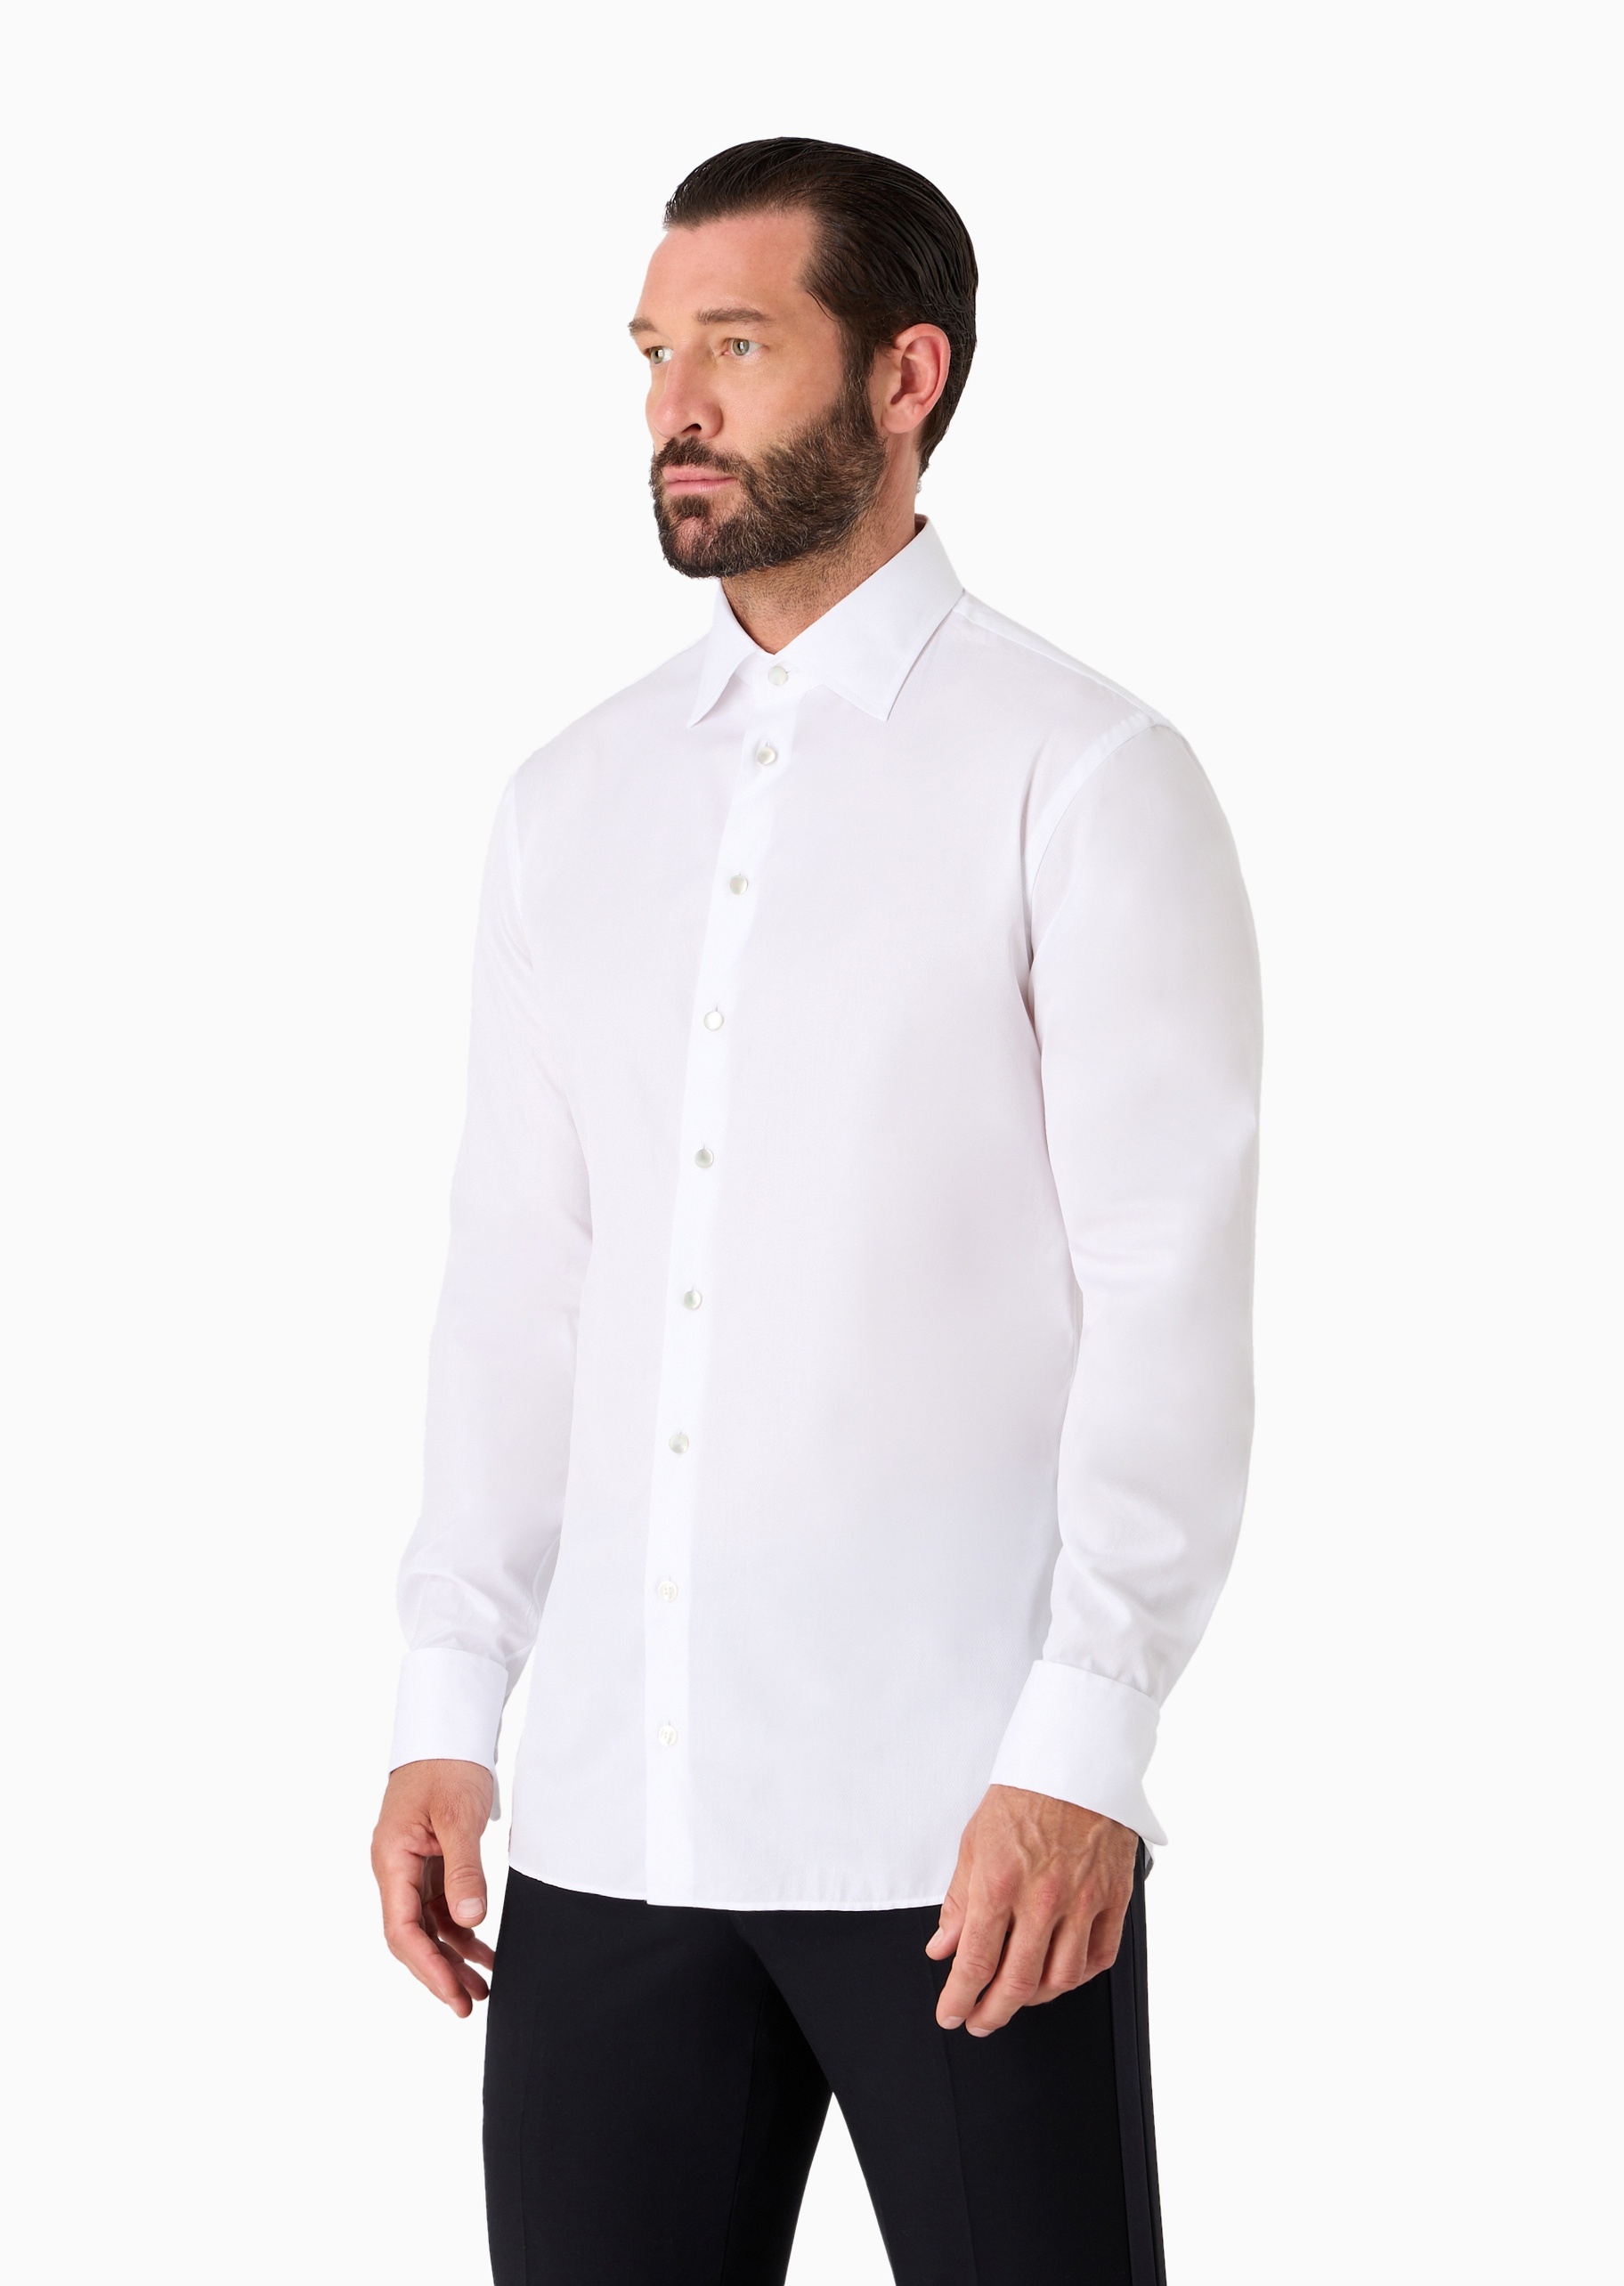 Giorgio Armani 男士全棉修身长袖翻领优雅纯色衬衫